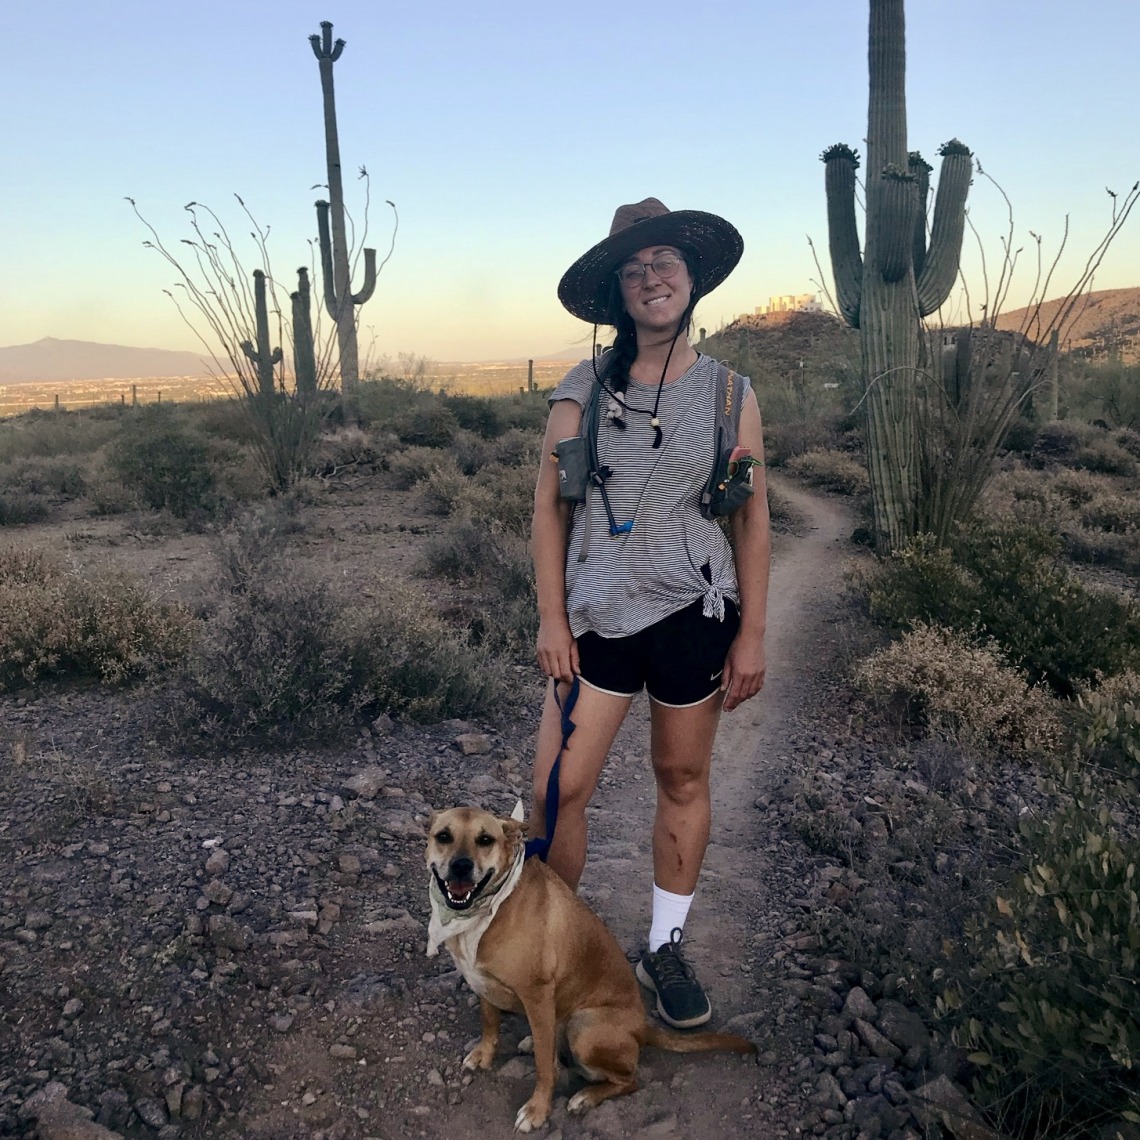 Anna Murveit portrait on trail in Arizona desert.